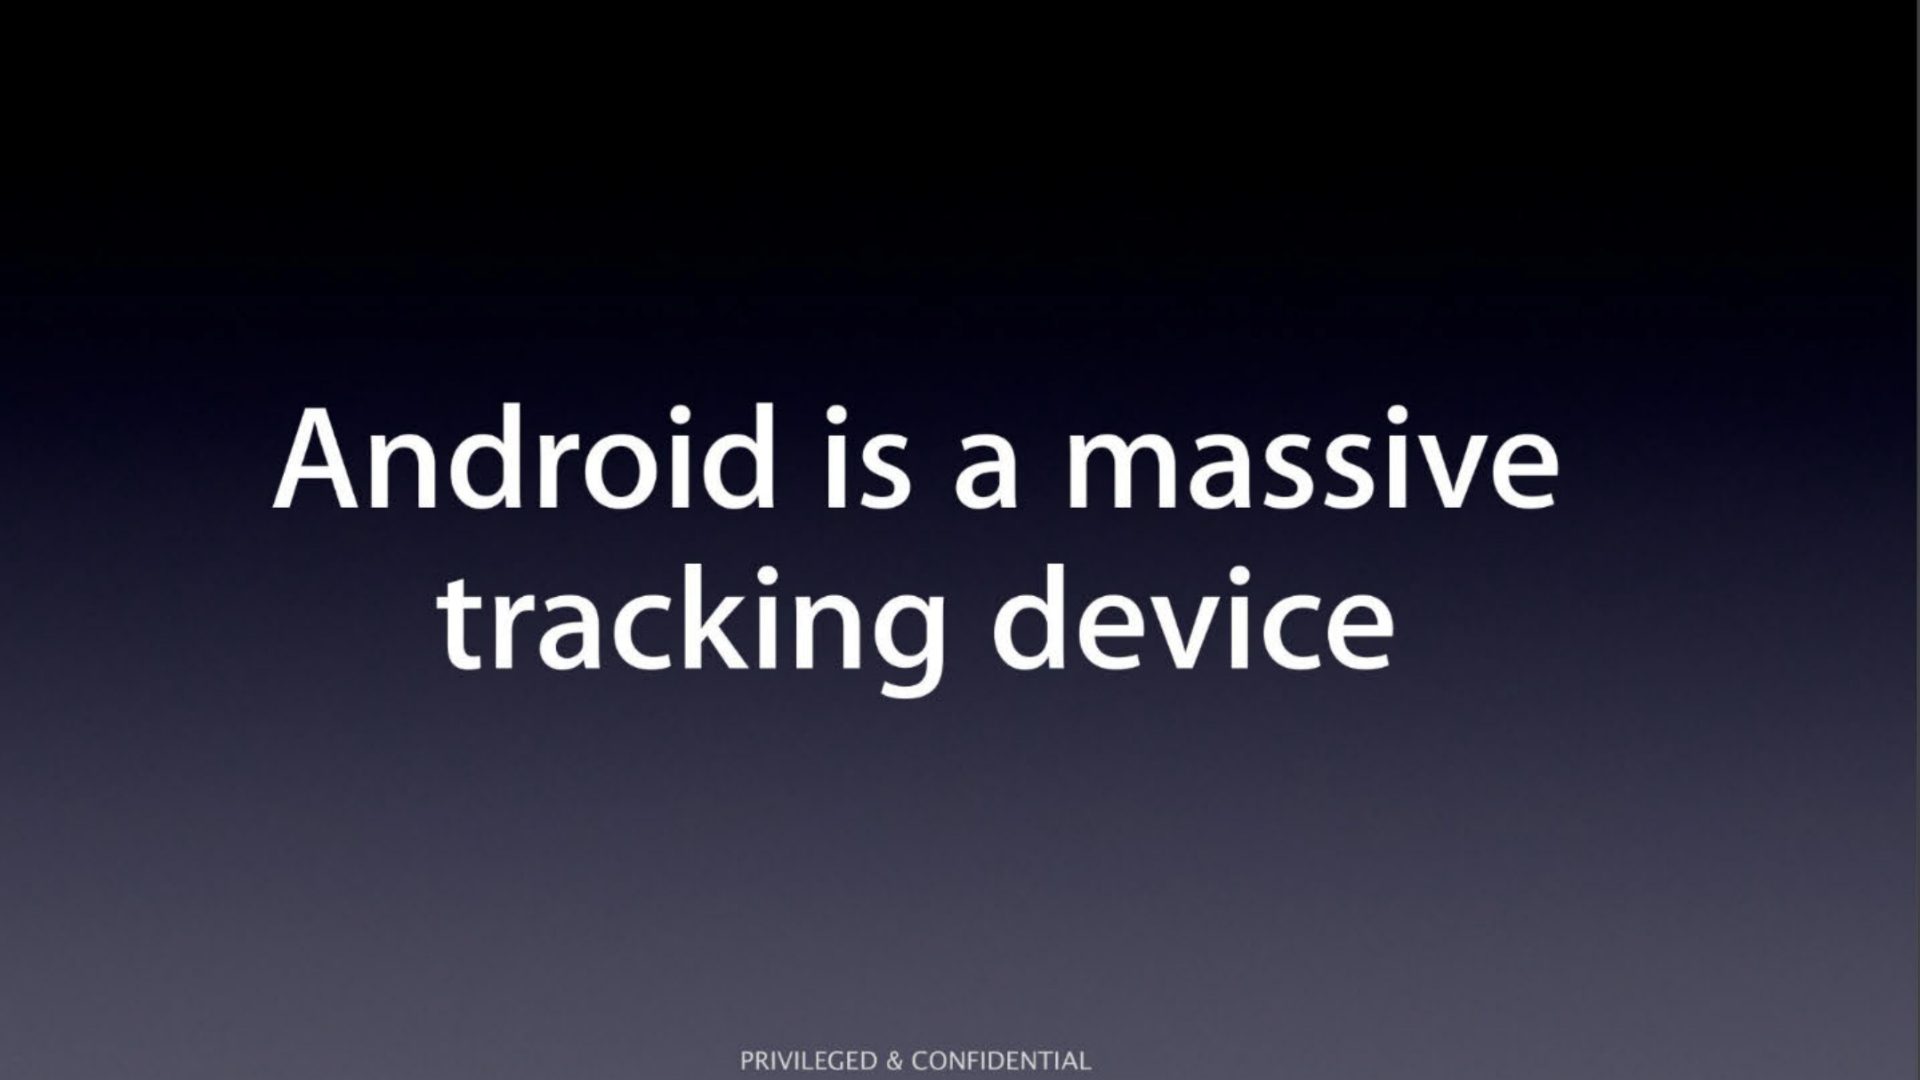 Apple, dahili bir sunumda Android’i “devasa bir izleme cihazı” olarak adlandırdı